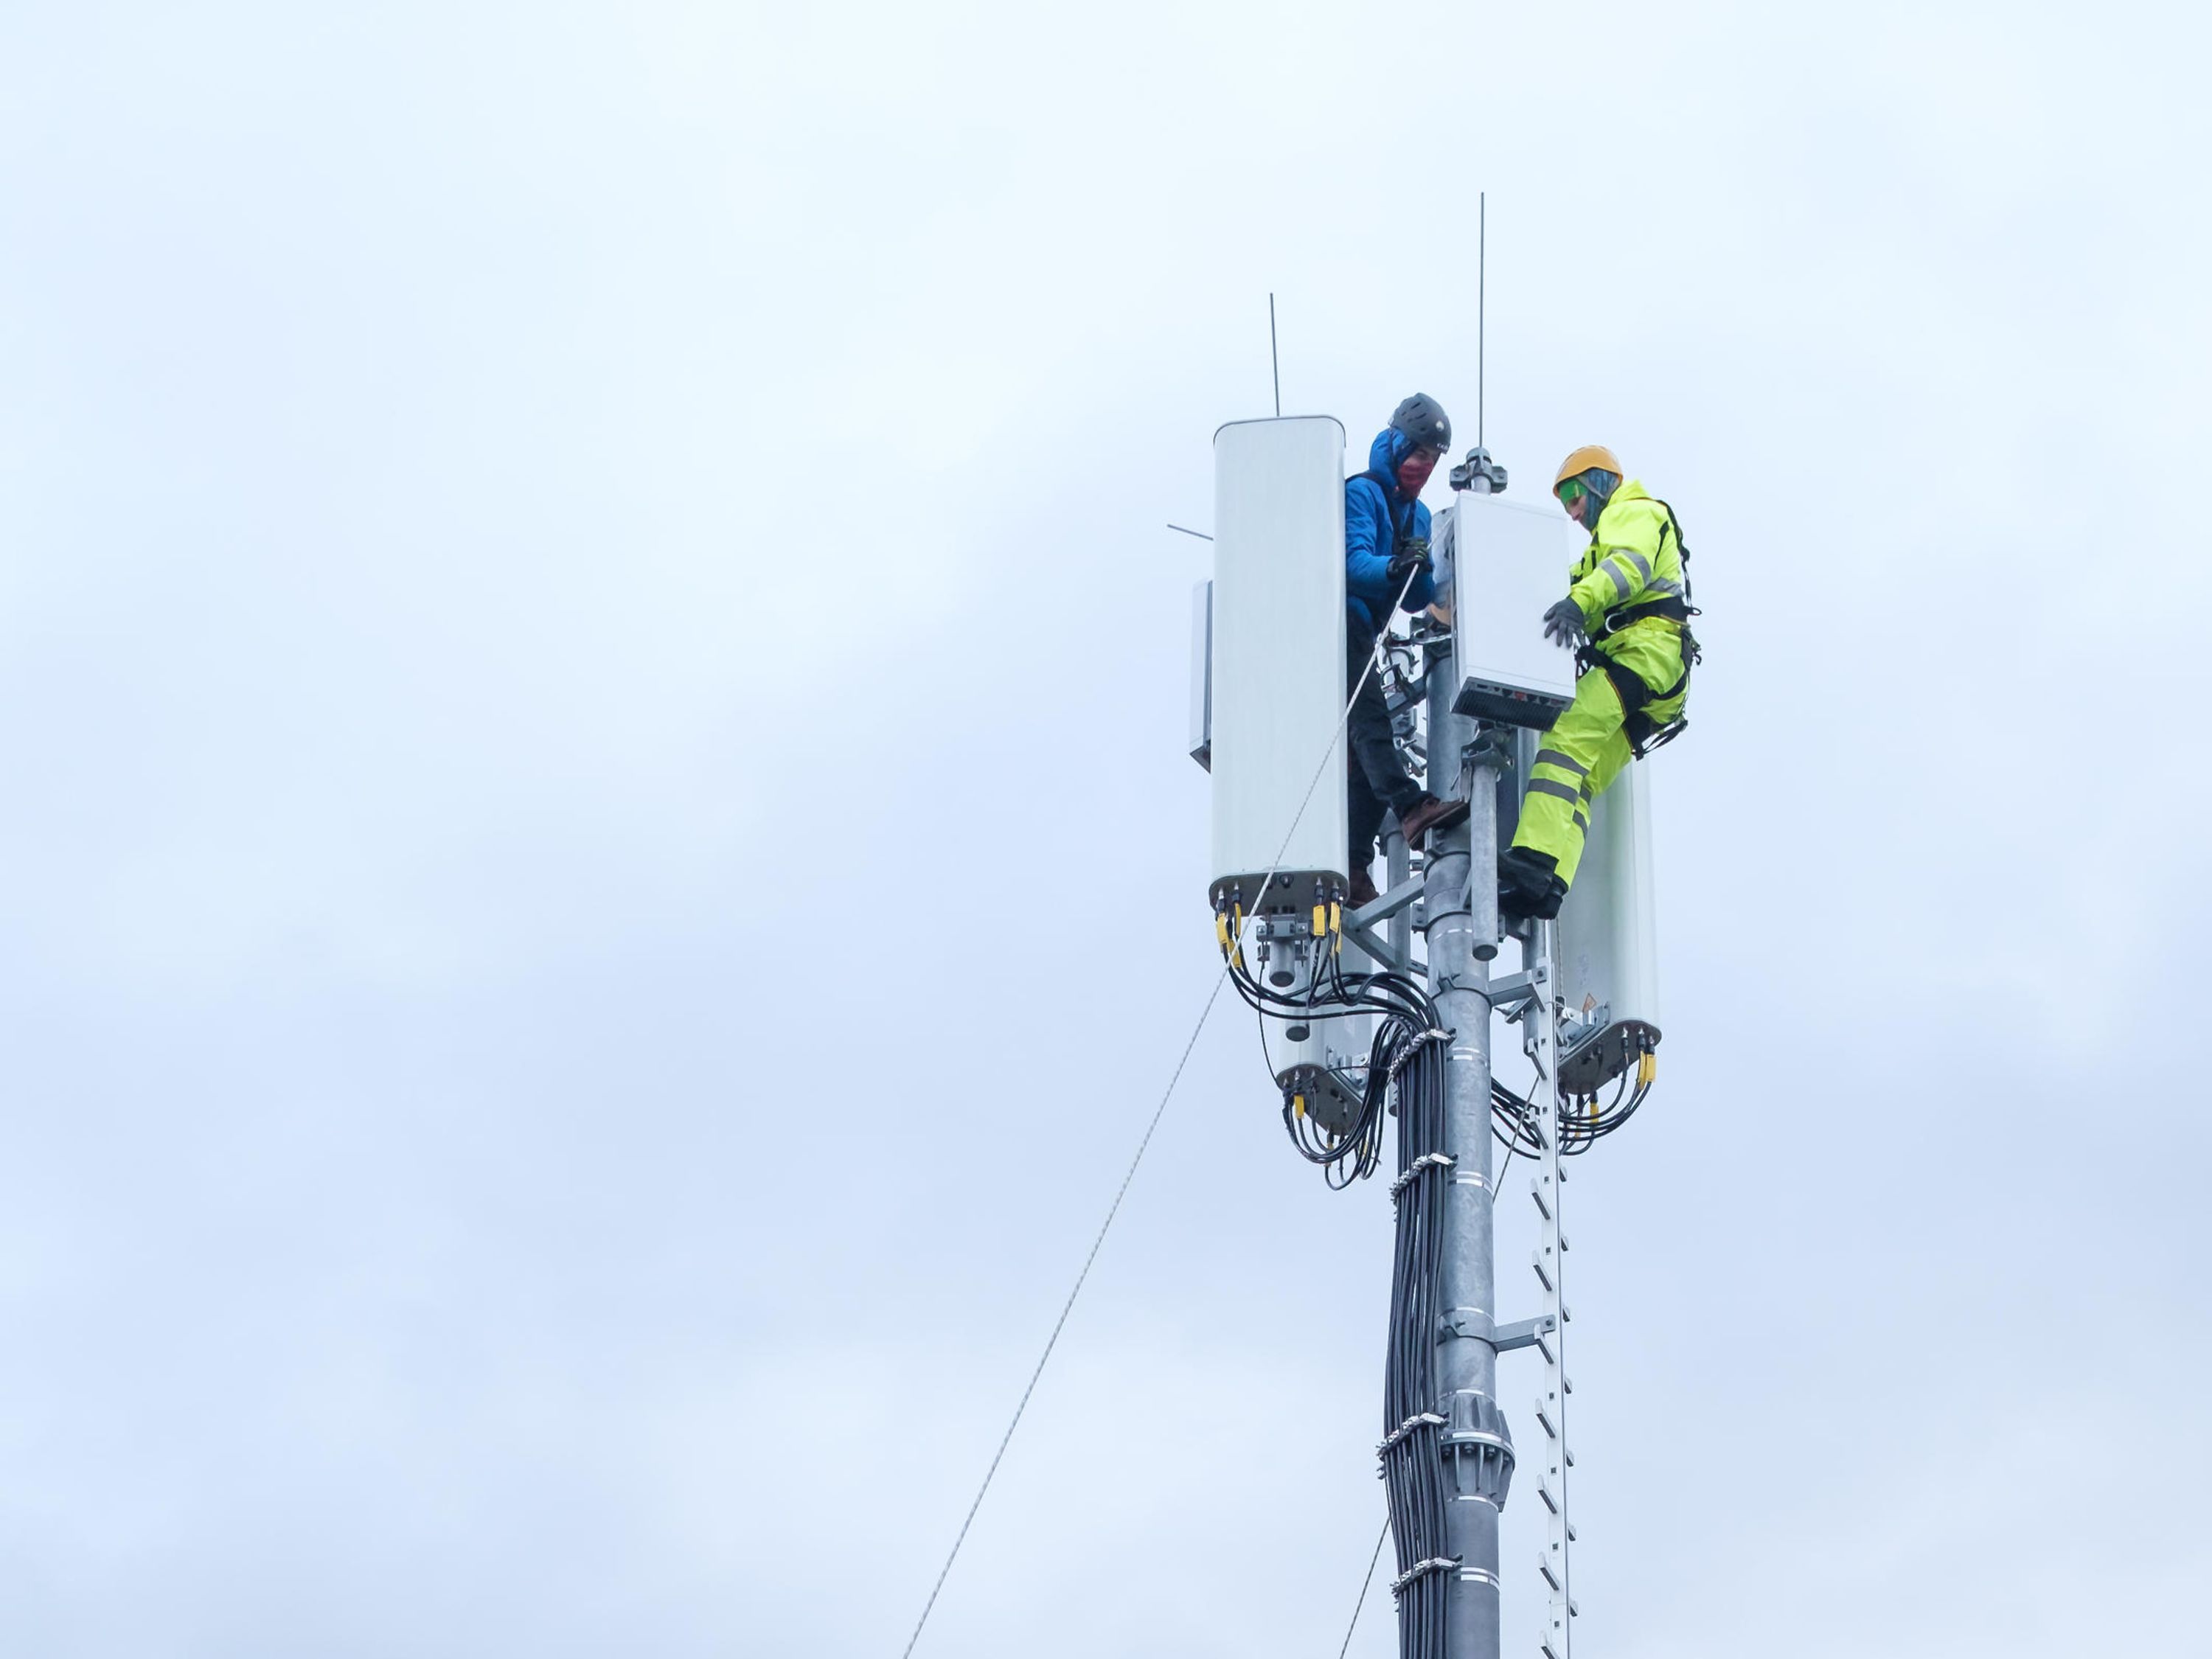 Telekom 5G Netzausbau: Telekom mit 647 weiteren Mobilfunkstandorten --9.200 5G-Antennen auf 3,6 GHz-Frequenz